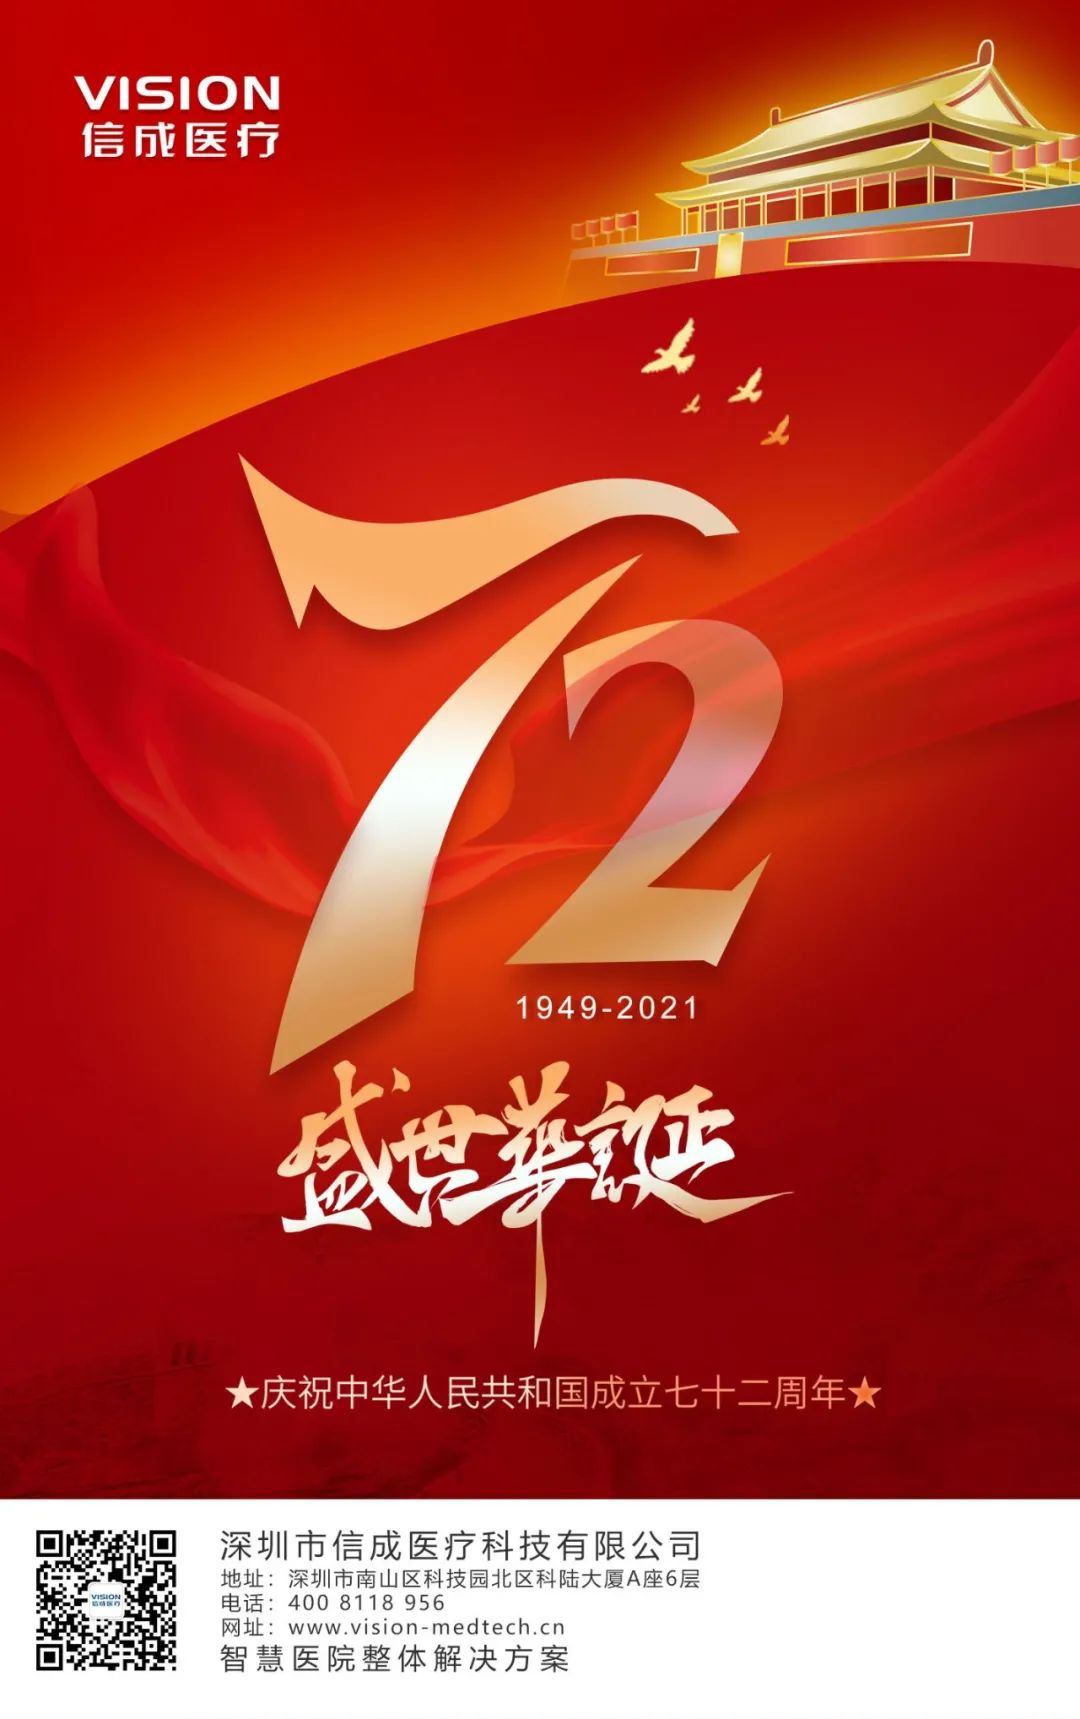 新中国成立72周年壁纸图片